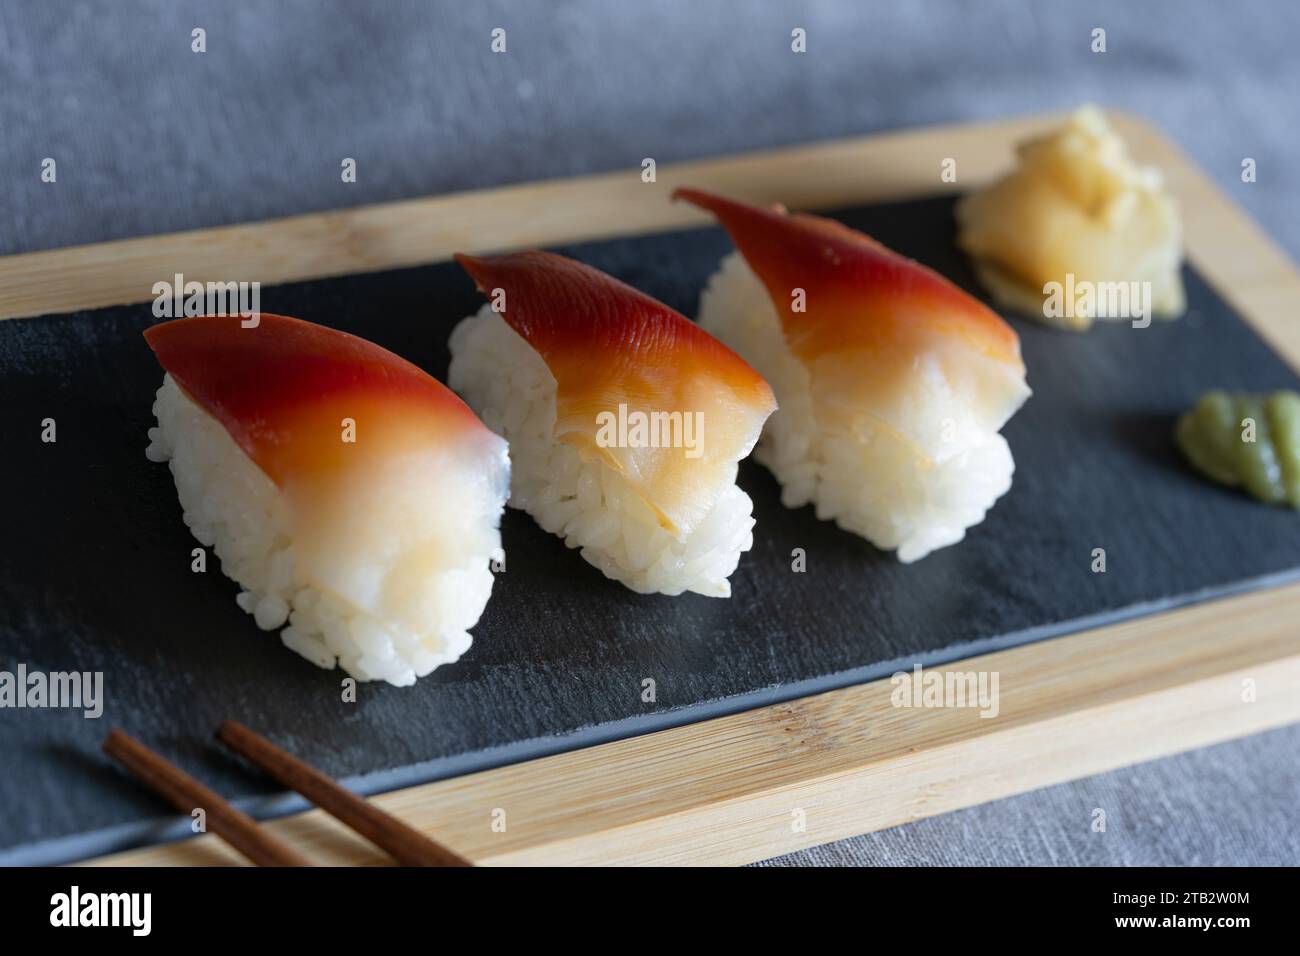 Morceaux de sushi de palourde surf maison (palourde d'eau salée comestible, japonais : hokki gai) - nourriture de style japonais mangée comme collation sur une planche d'ardoise Banque D'Images